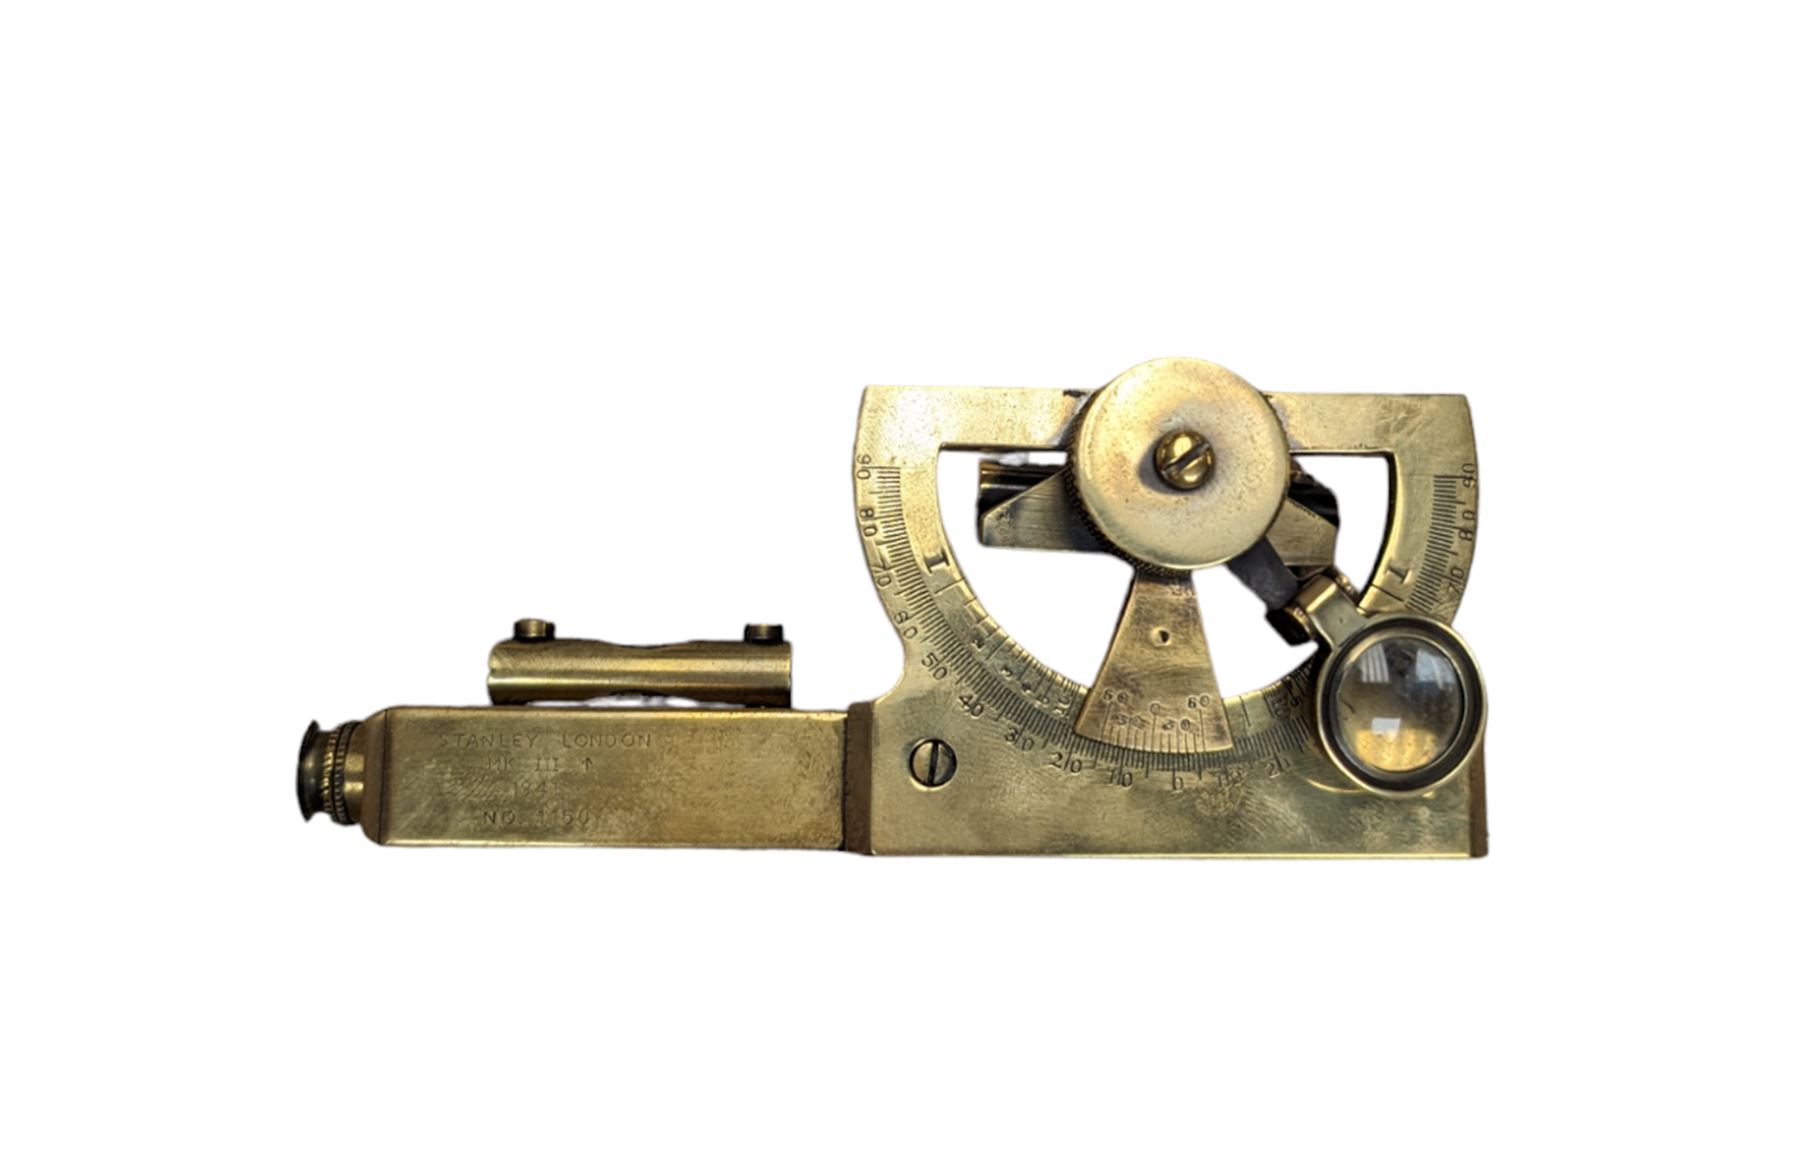 Stanley brass Abney clinometer